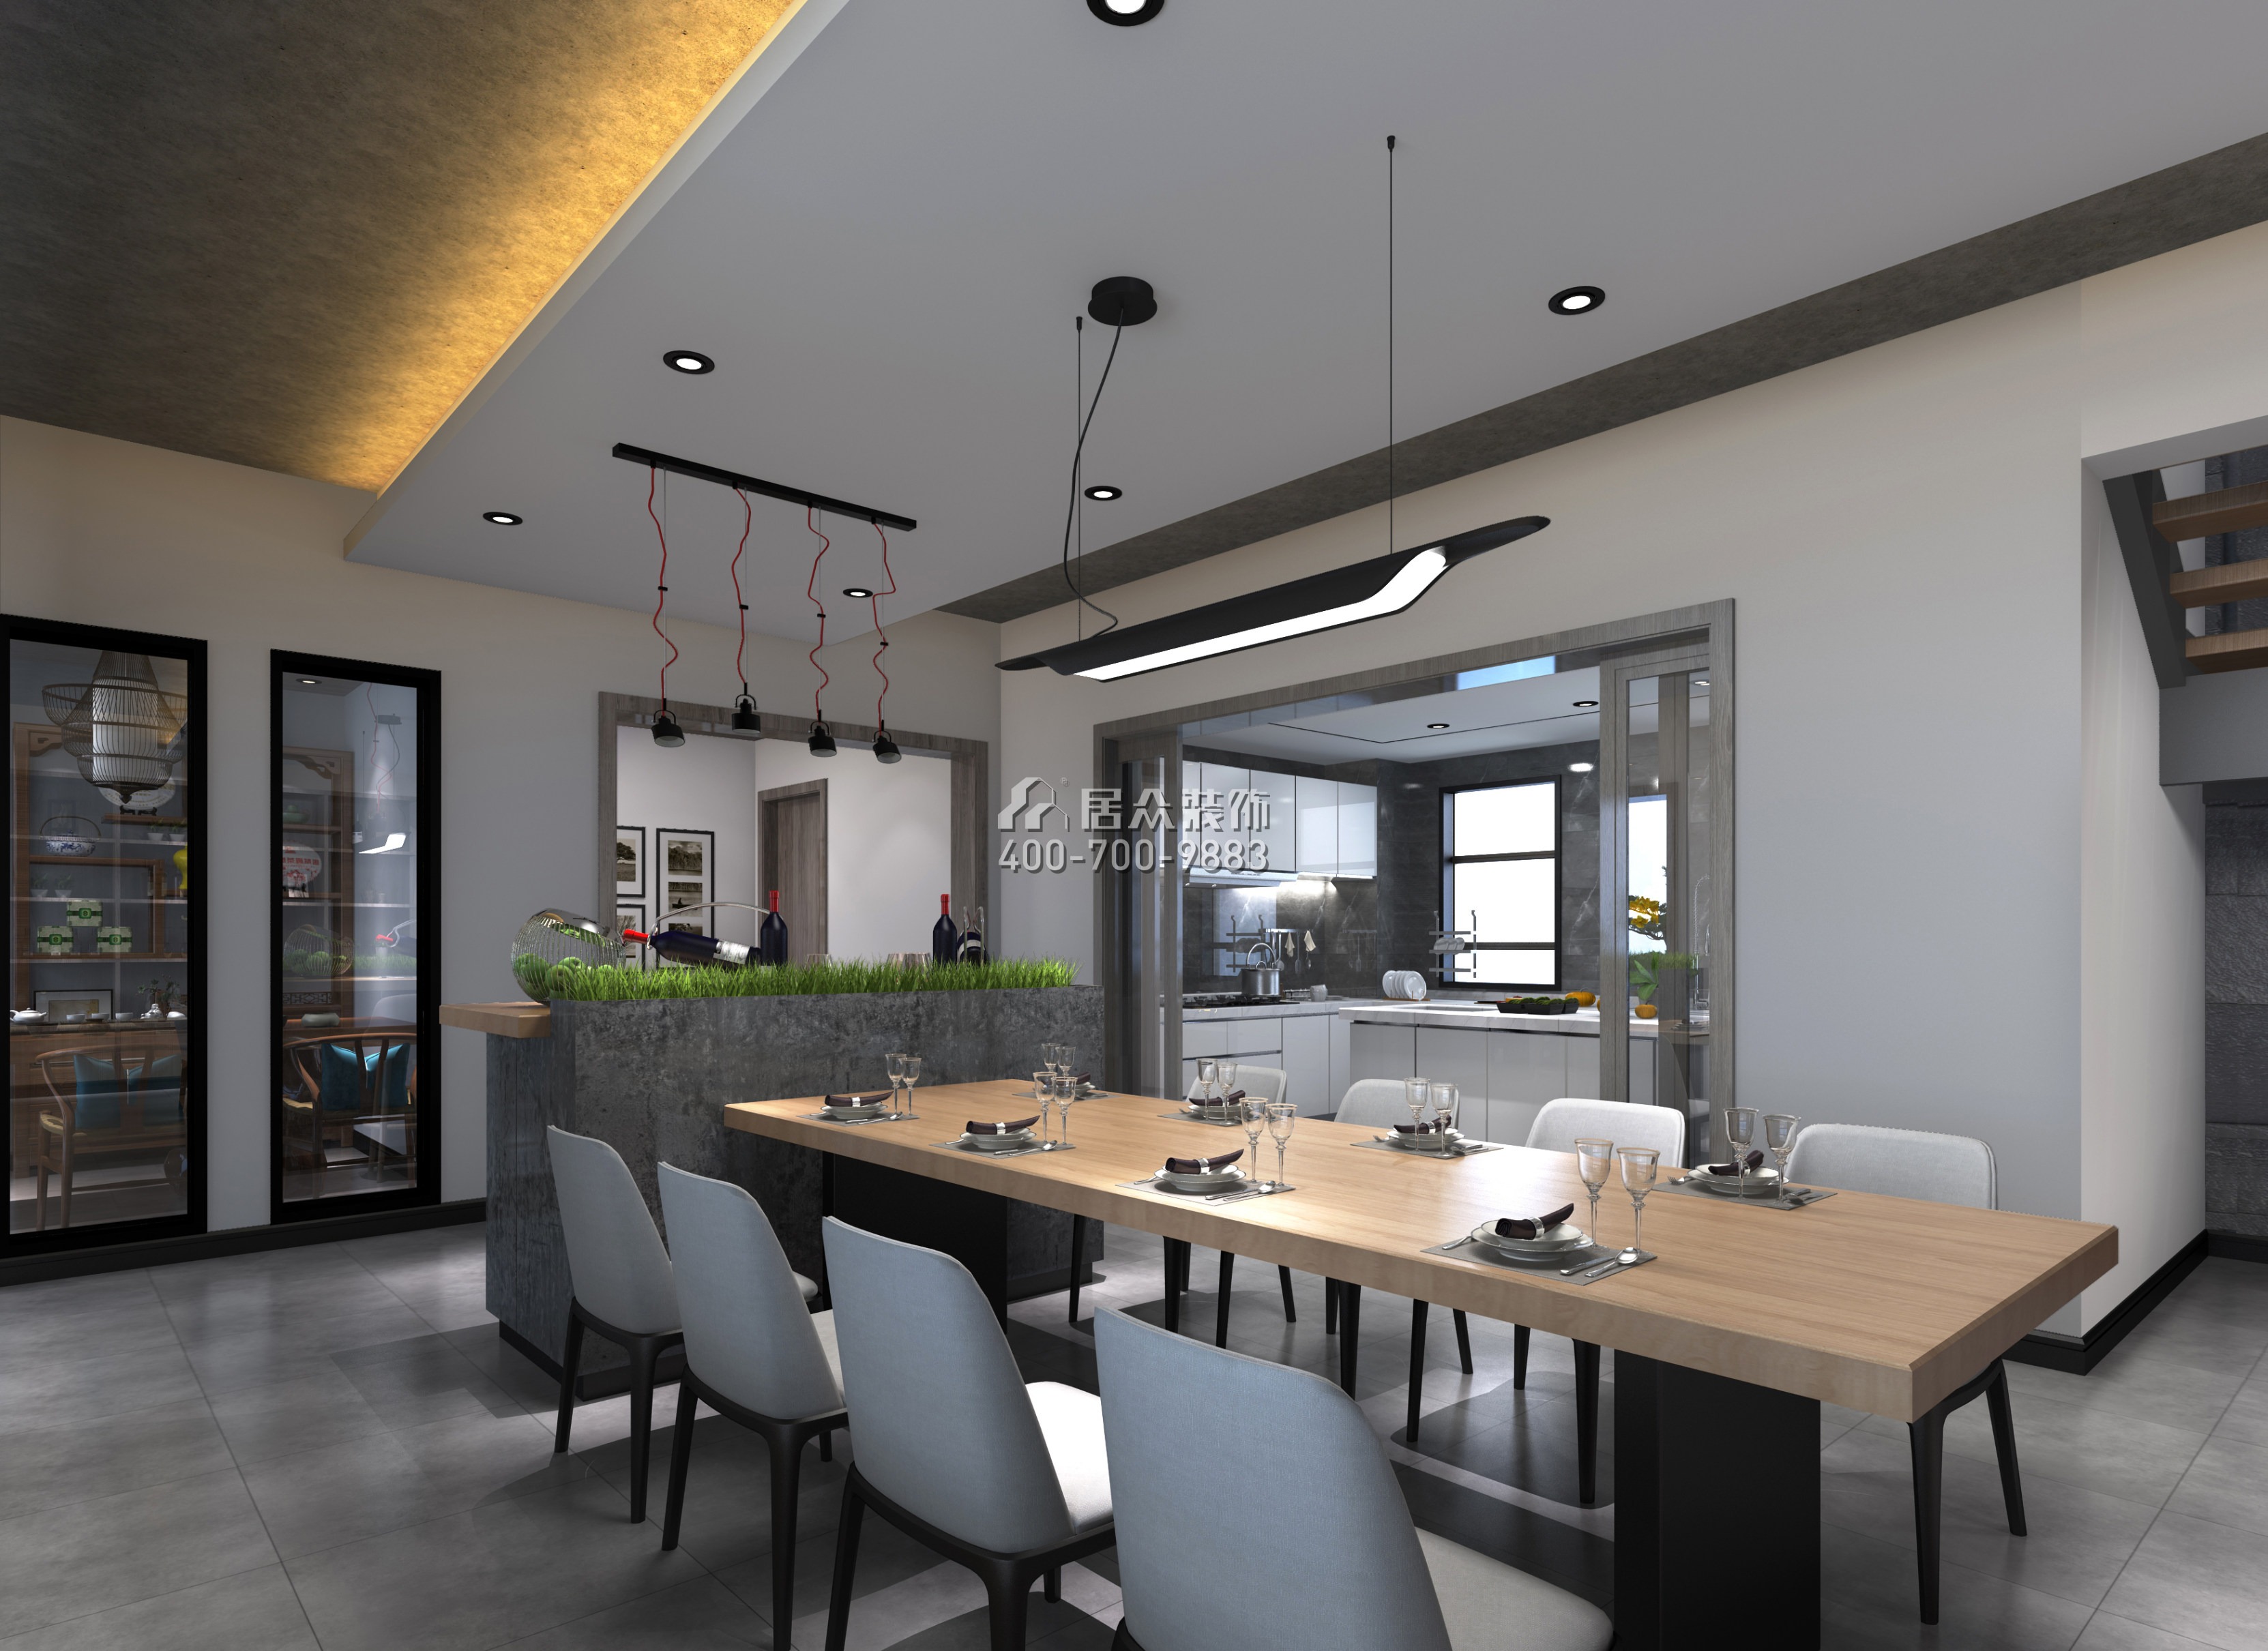 月珑湾豪庭270平方米现代简约风格复式户型餐厅装修效果图